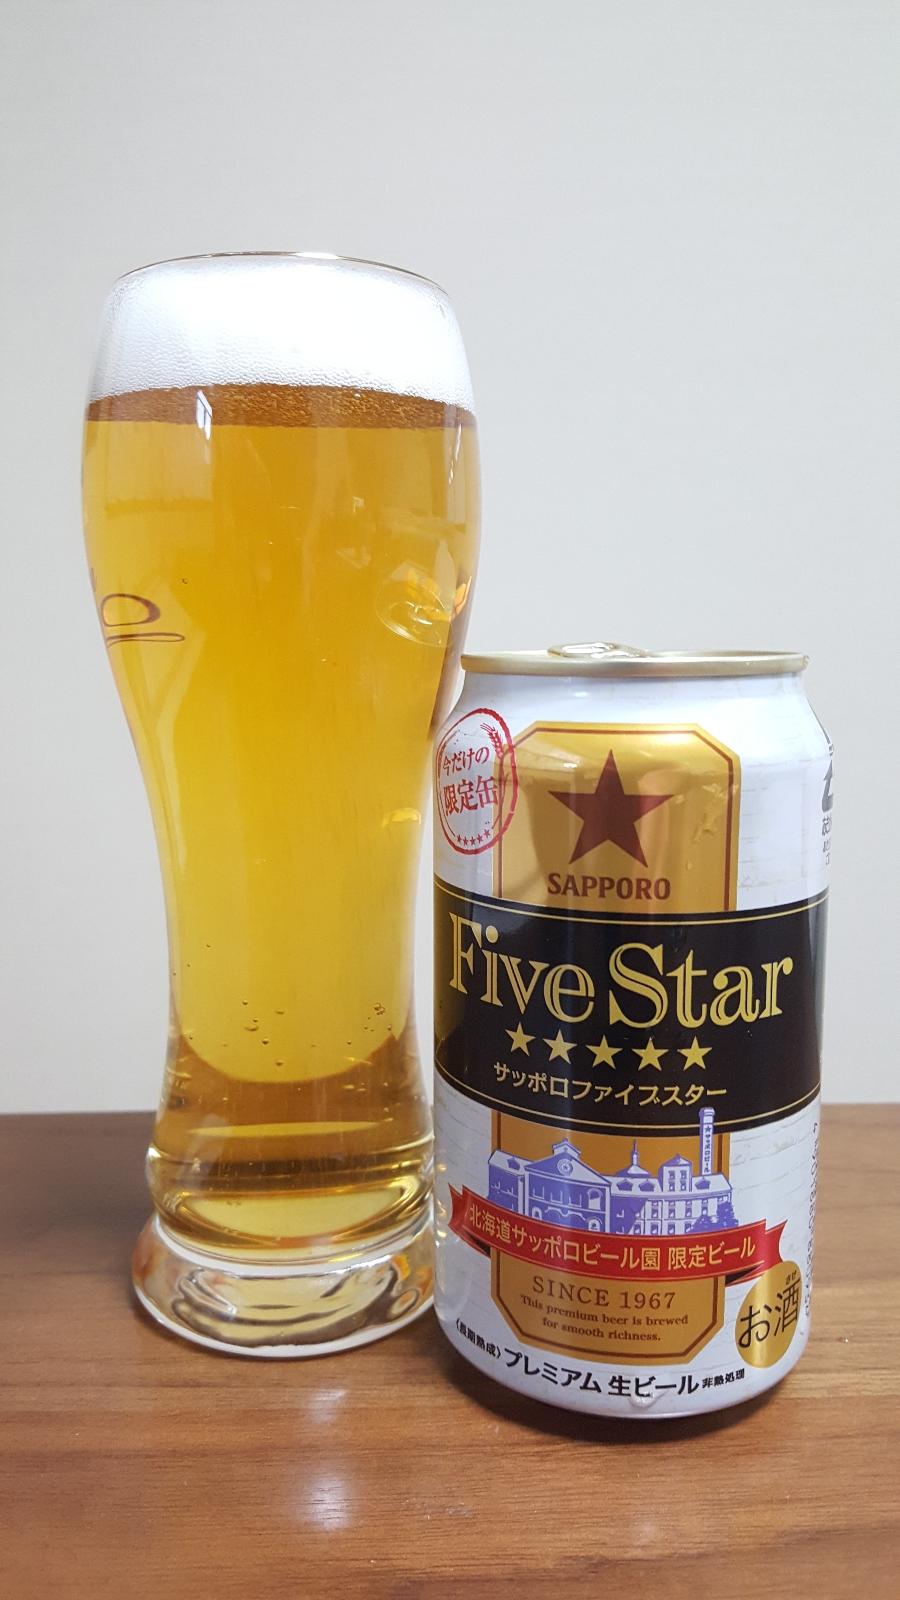 Sapporo Five Star Premium (2018)